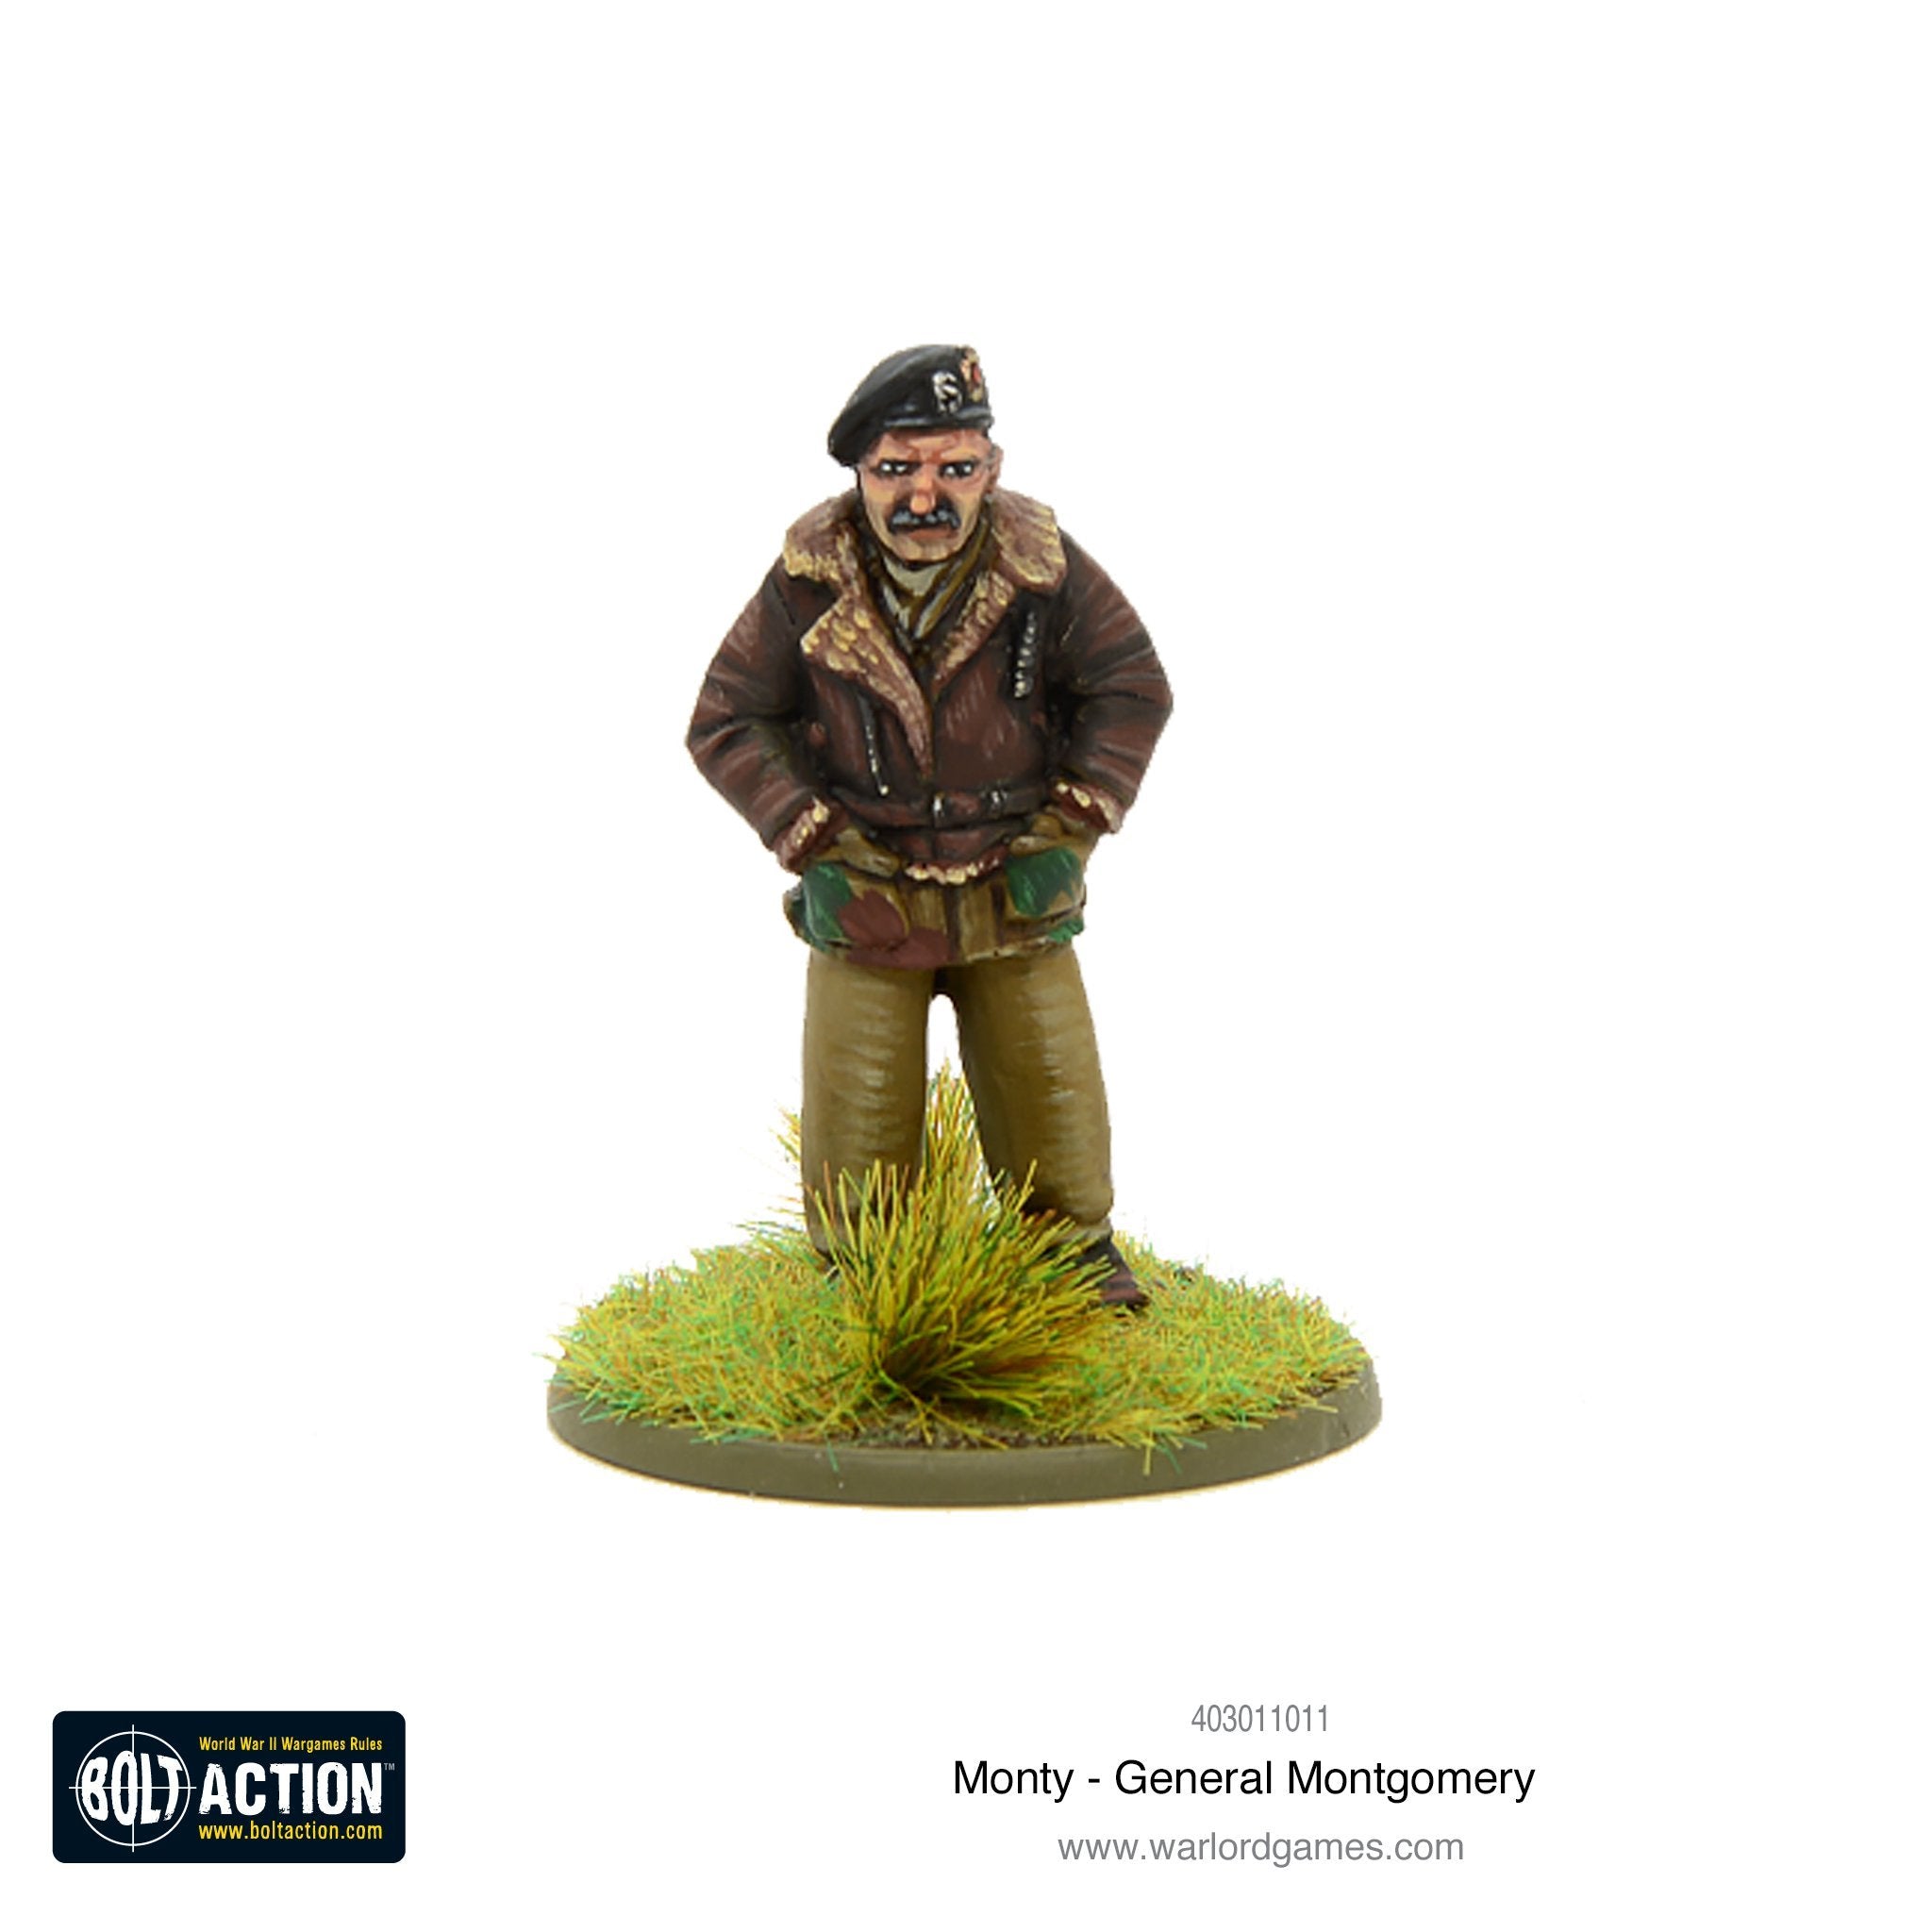 Monty - General Montgomery